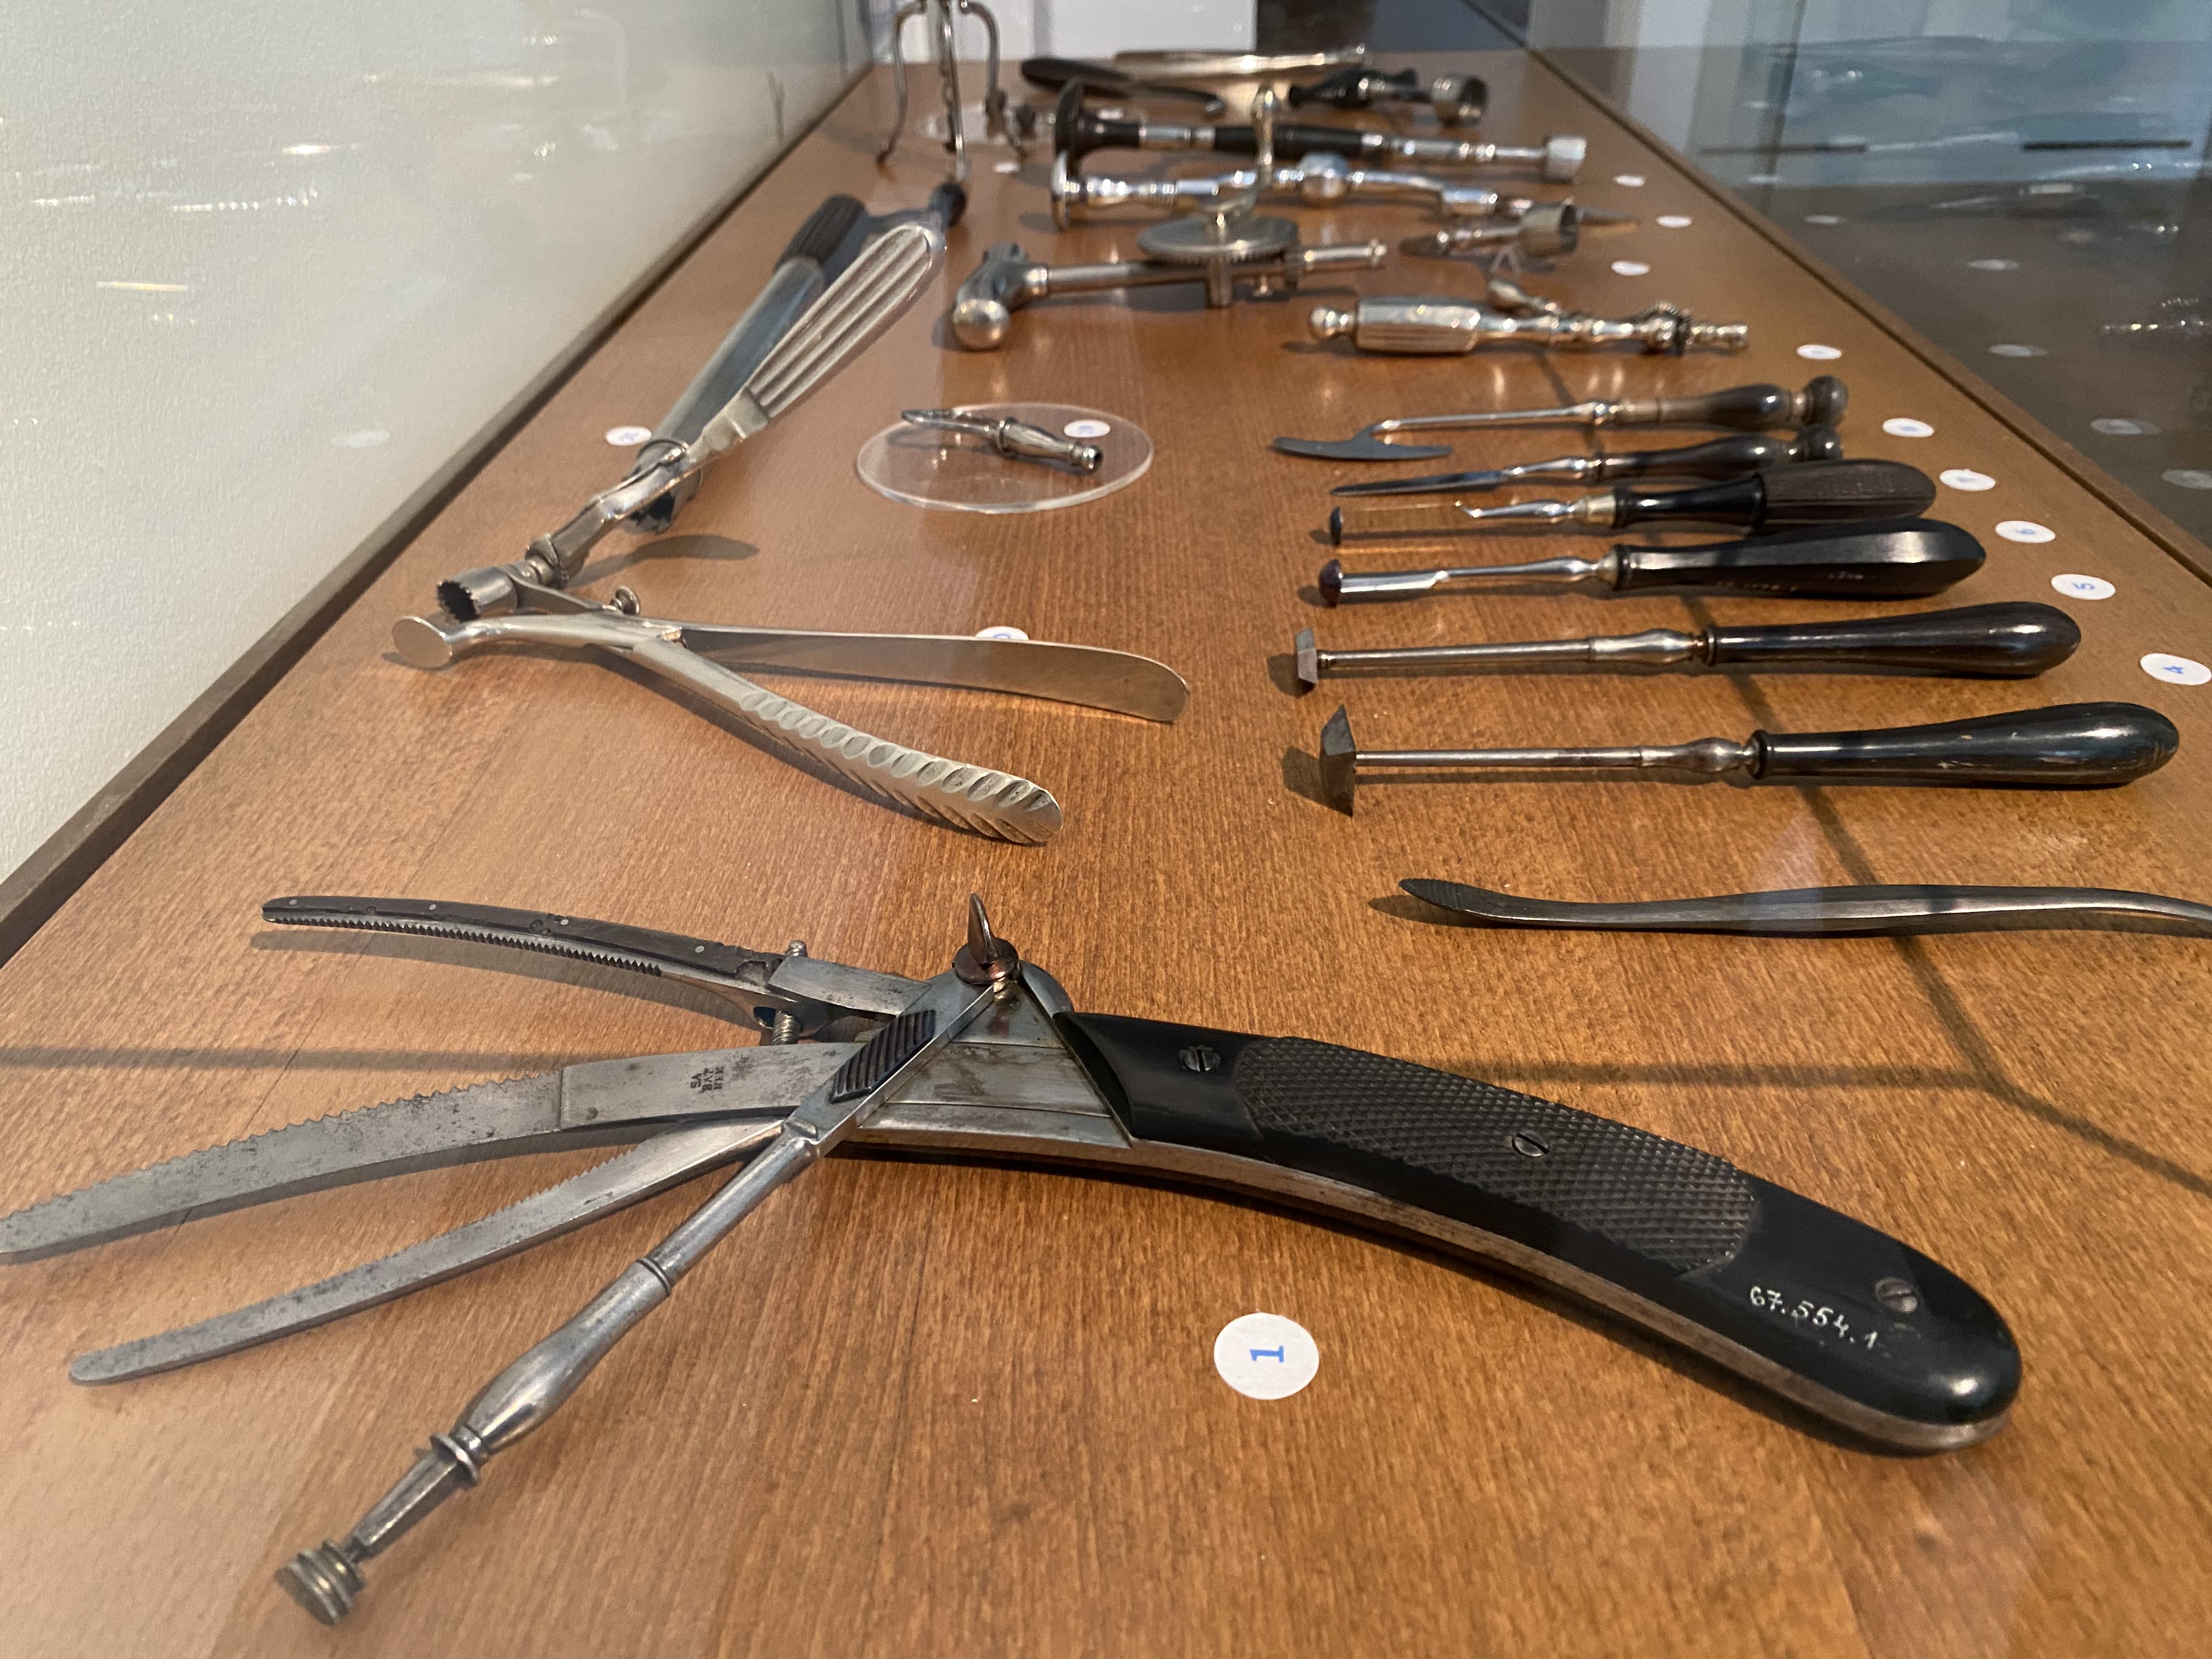 Csak erős idegzetűeknek! – A Semmelweis Orvostörténeti Múzeum sebészetieszköz-kiállításán jártunk